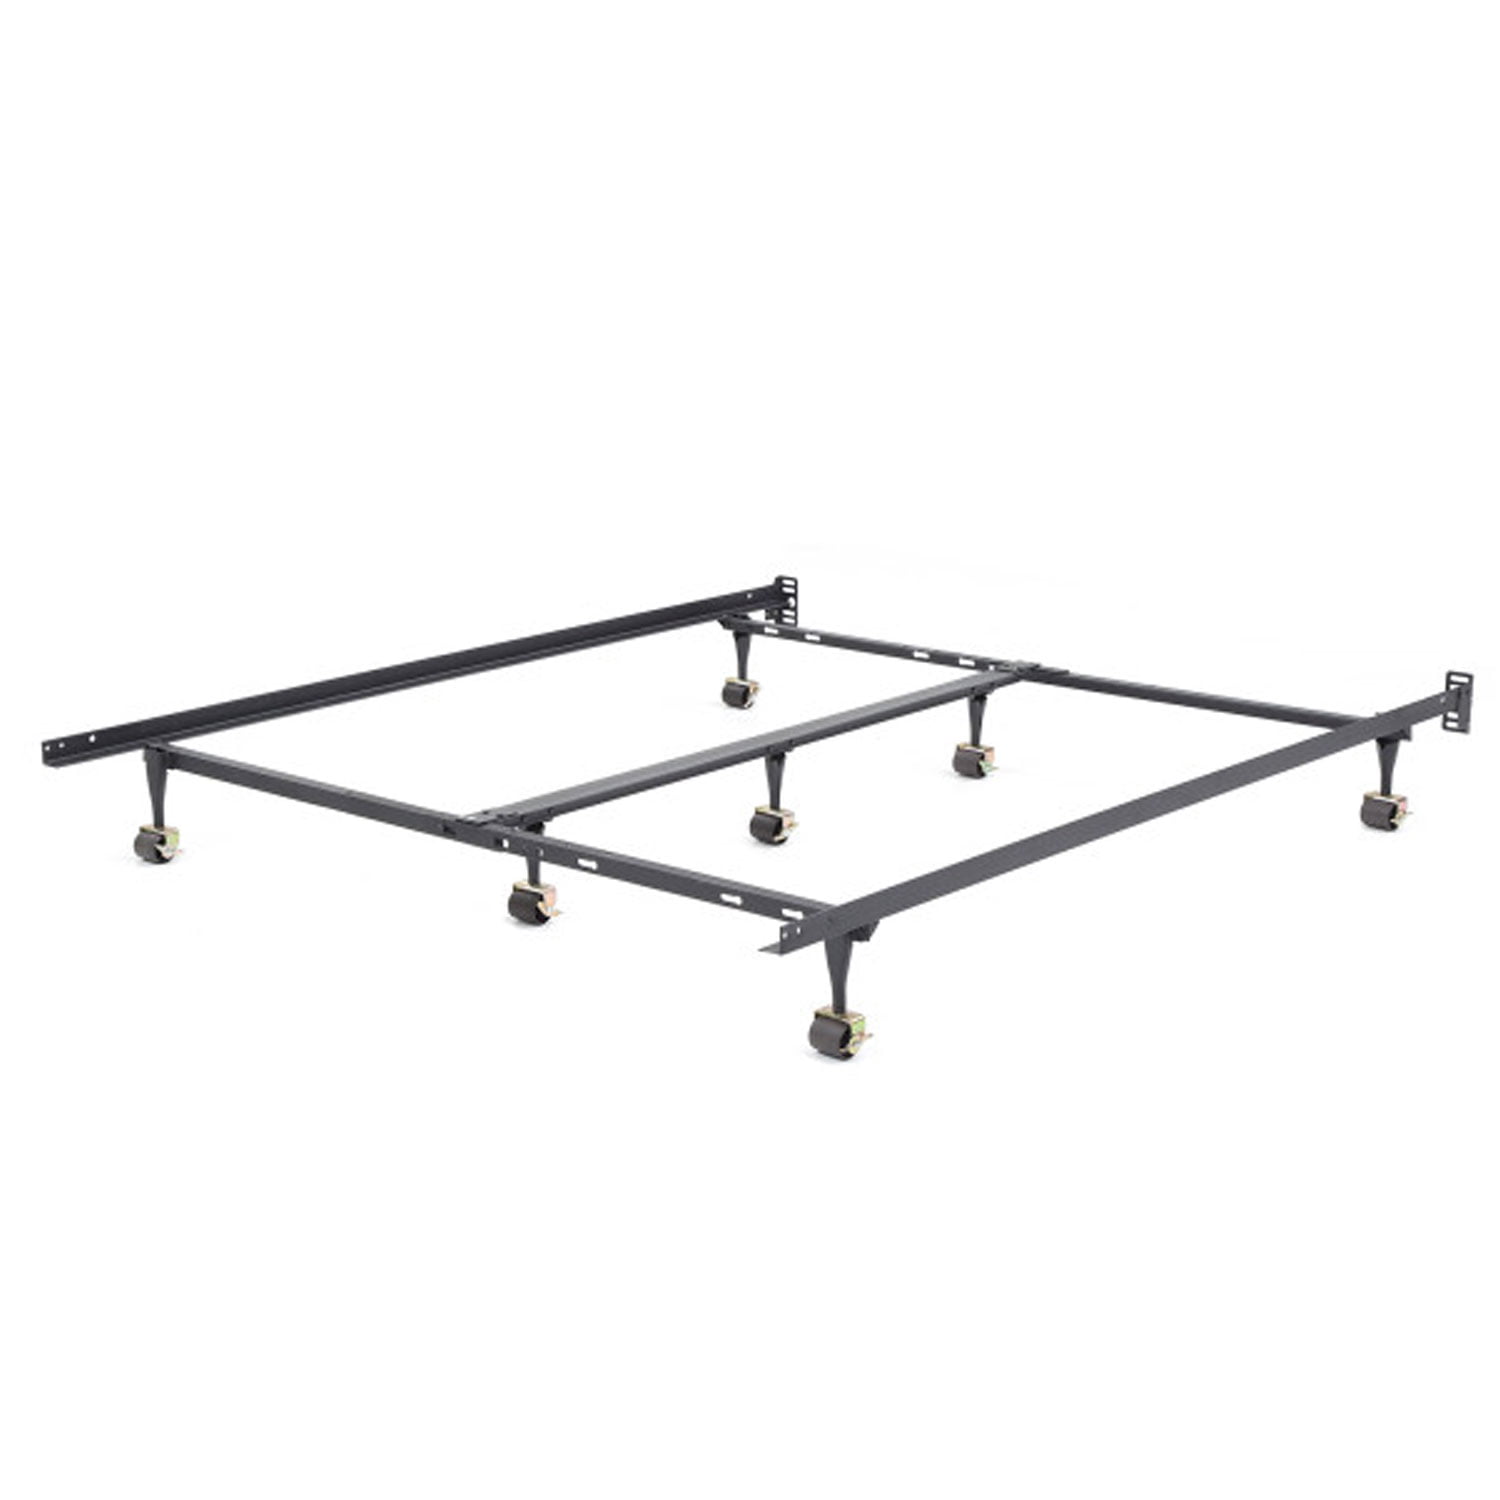 Structures Adjustable Metal Bed Frame, Structures Adjustable Metal Bed Frame